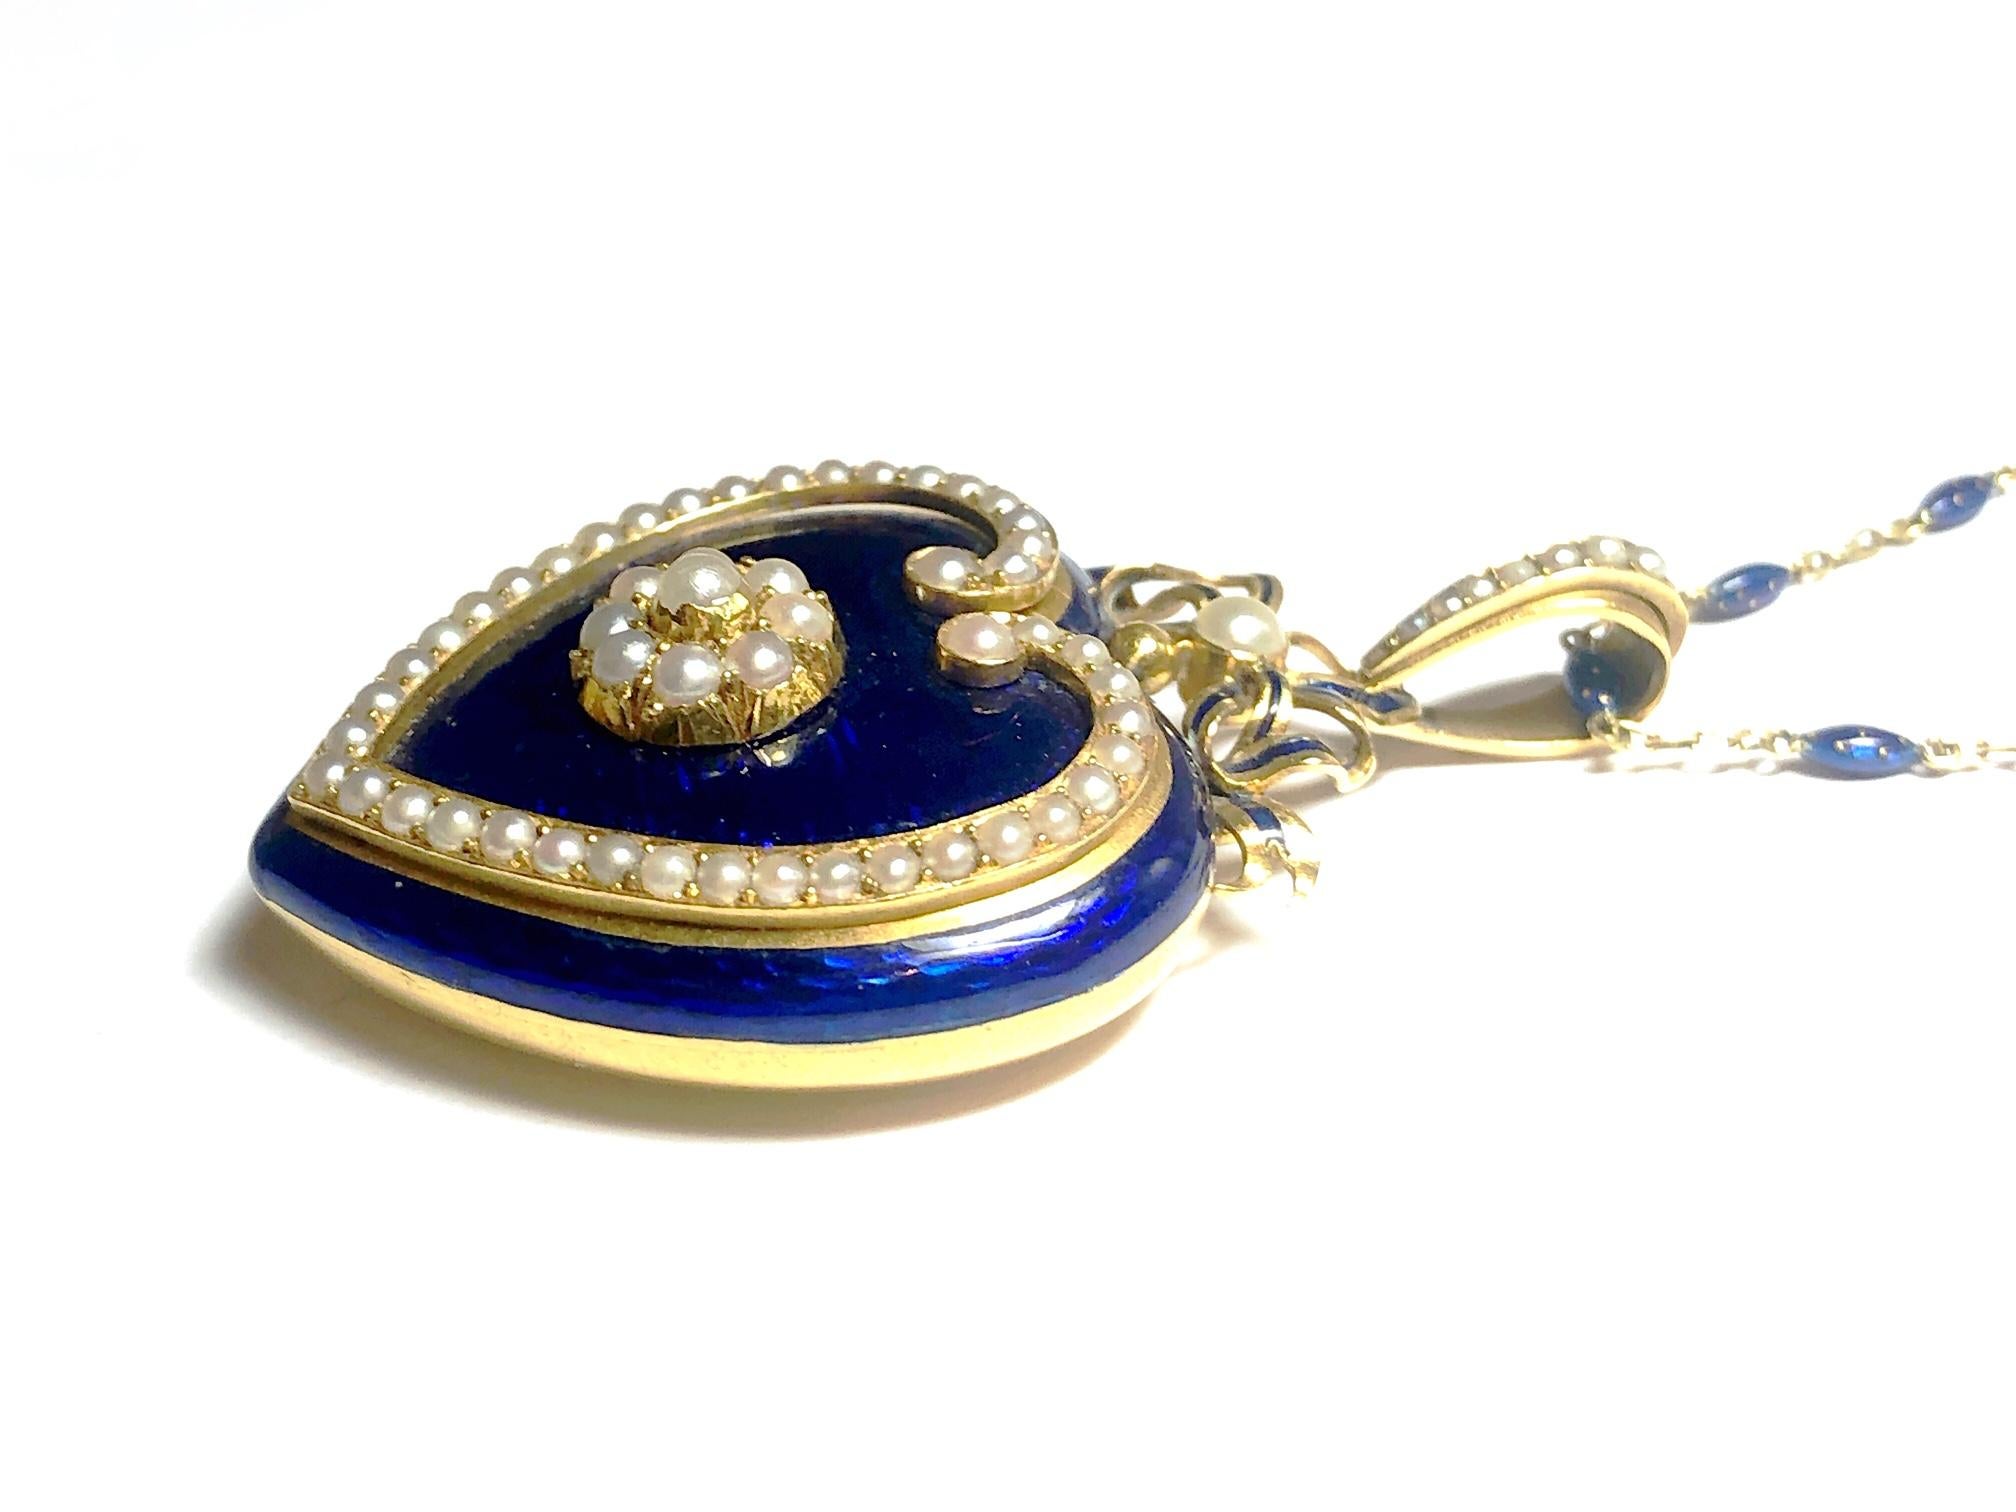 enamel heart locket necklace